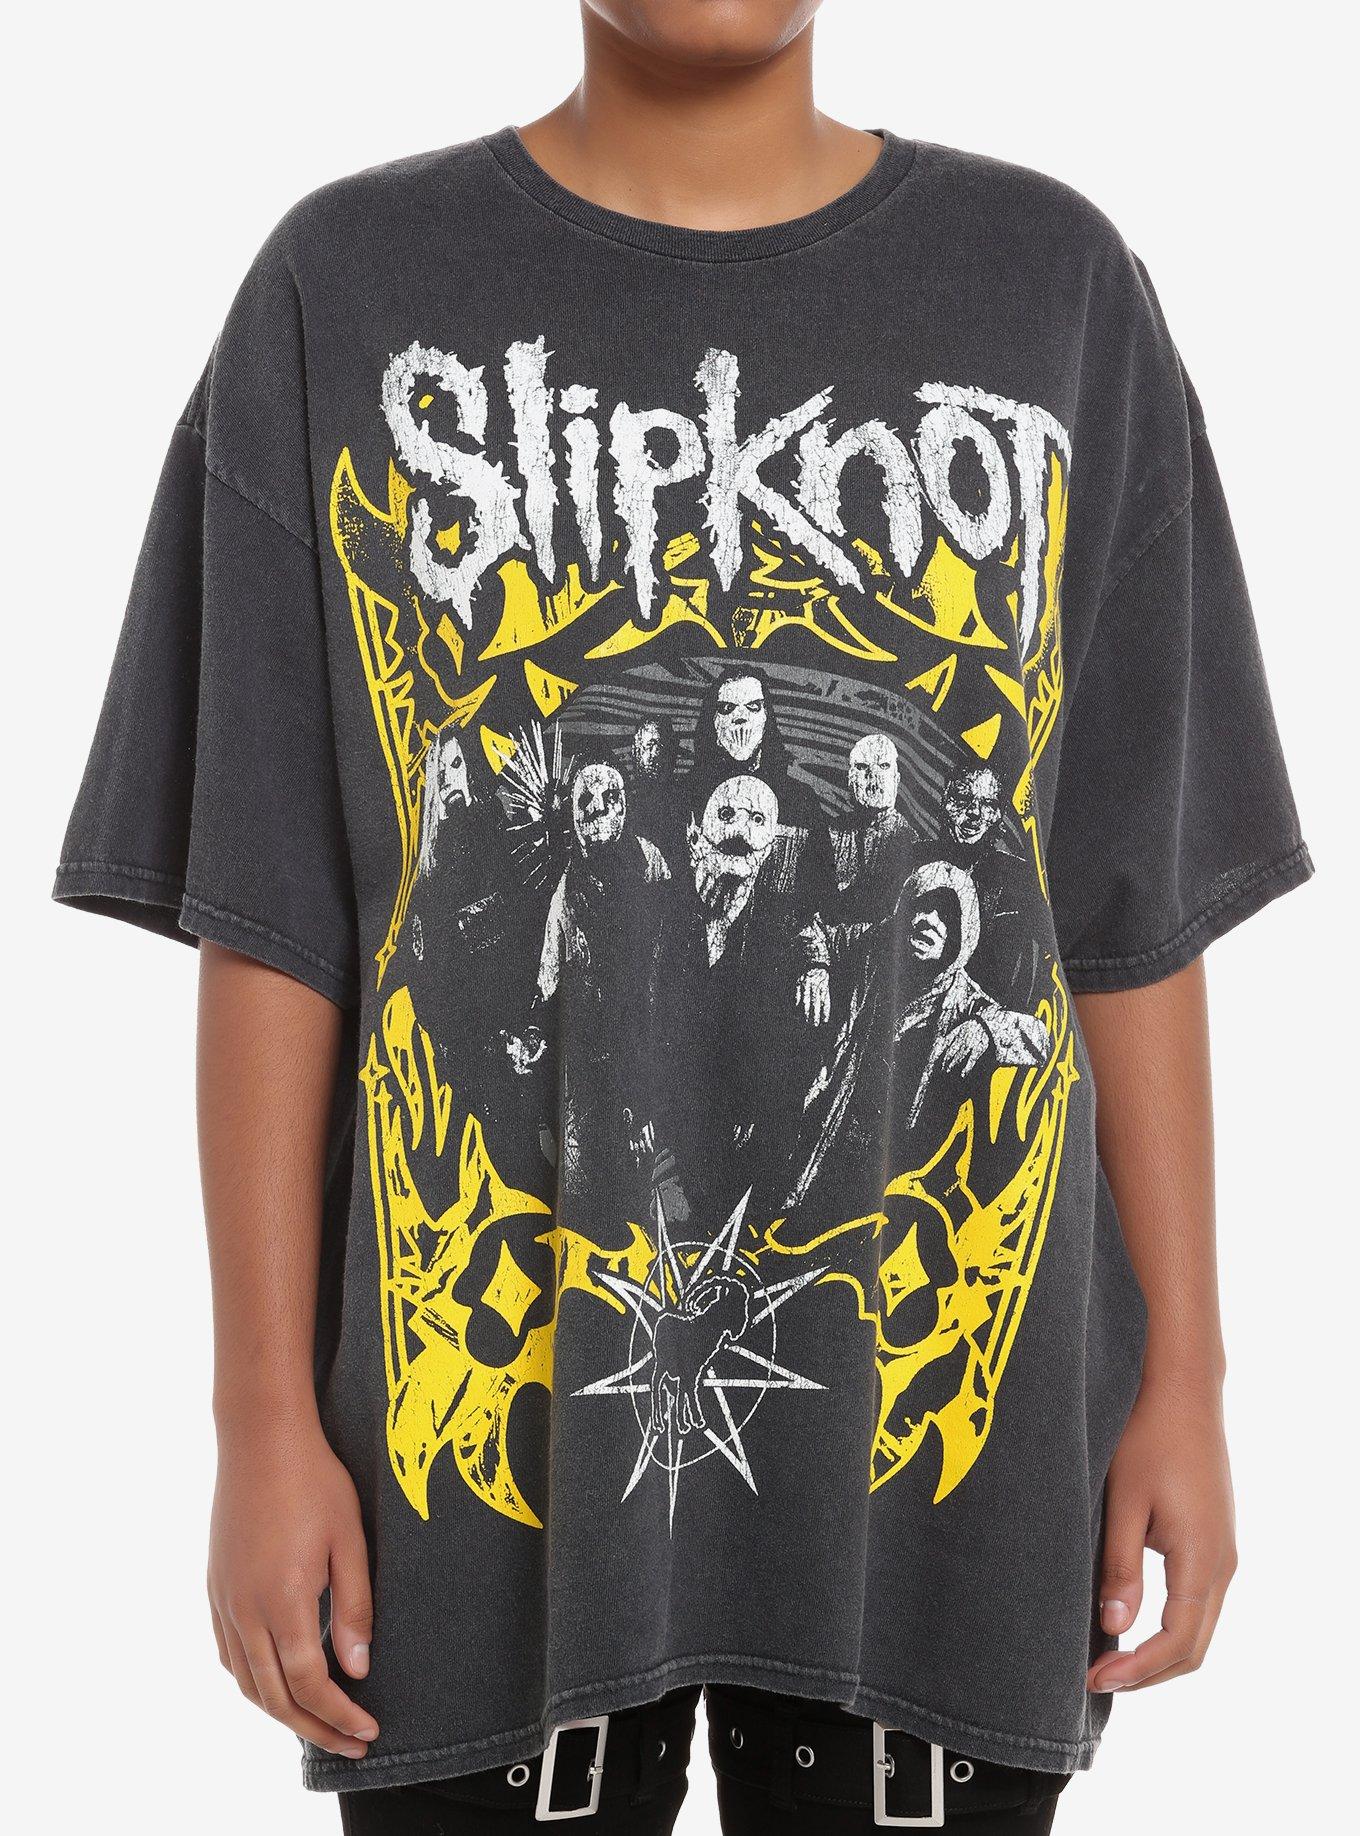 Slipknot Group Photo Girls Oversized T-Shirt, BLACK, hi-res